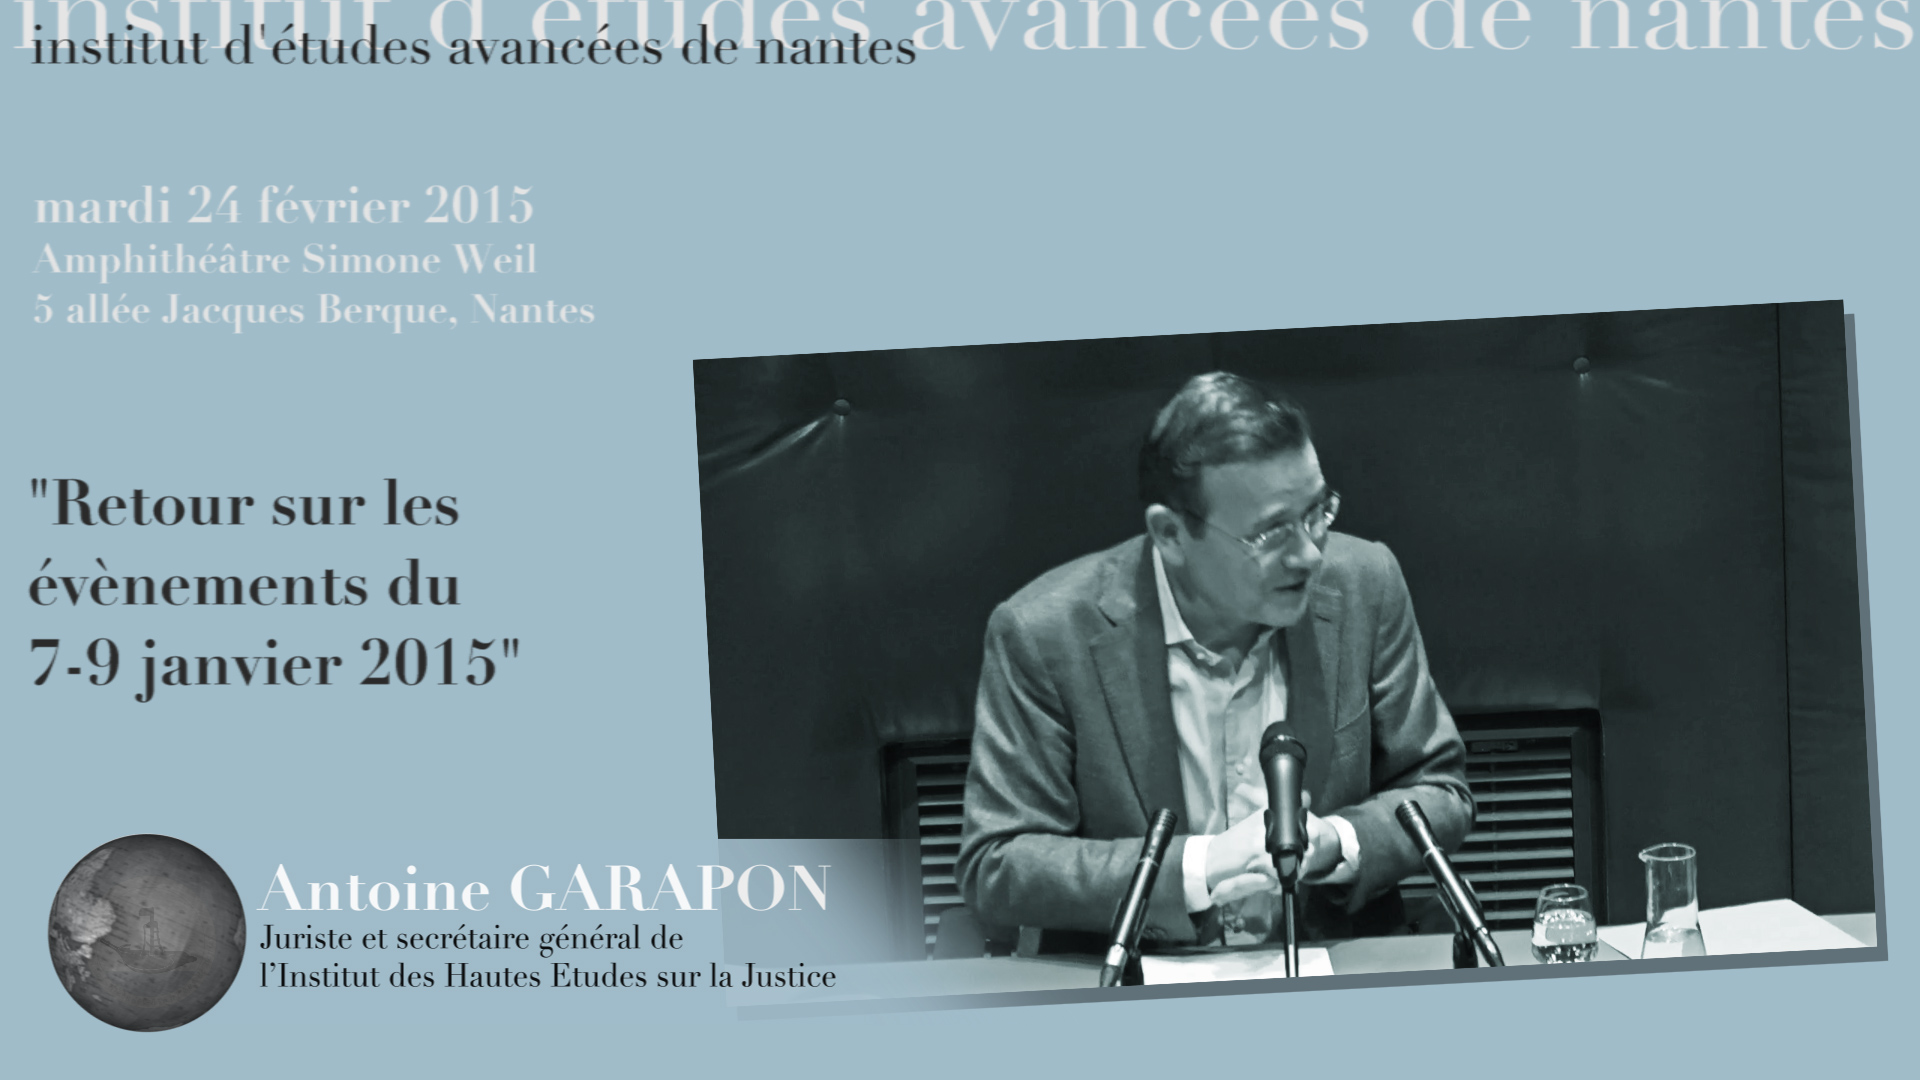 Conférence d'Antoine Garapon : "Retour sur les évènements des 7-9 janvier 2015"